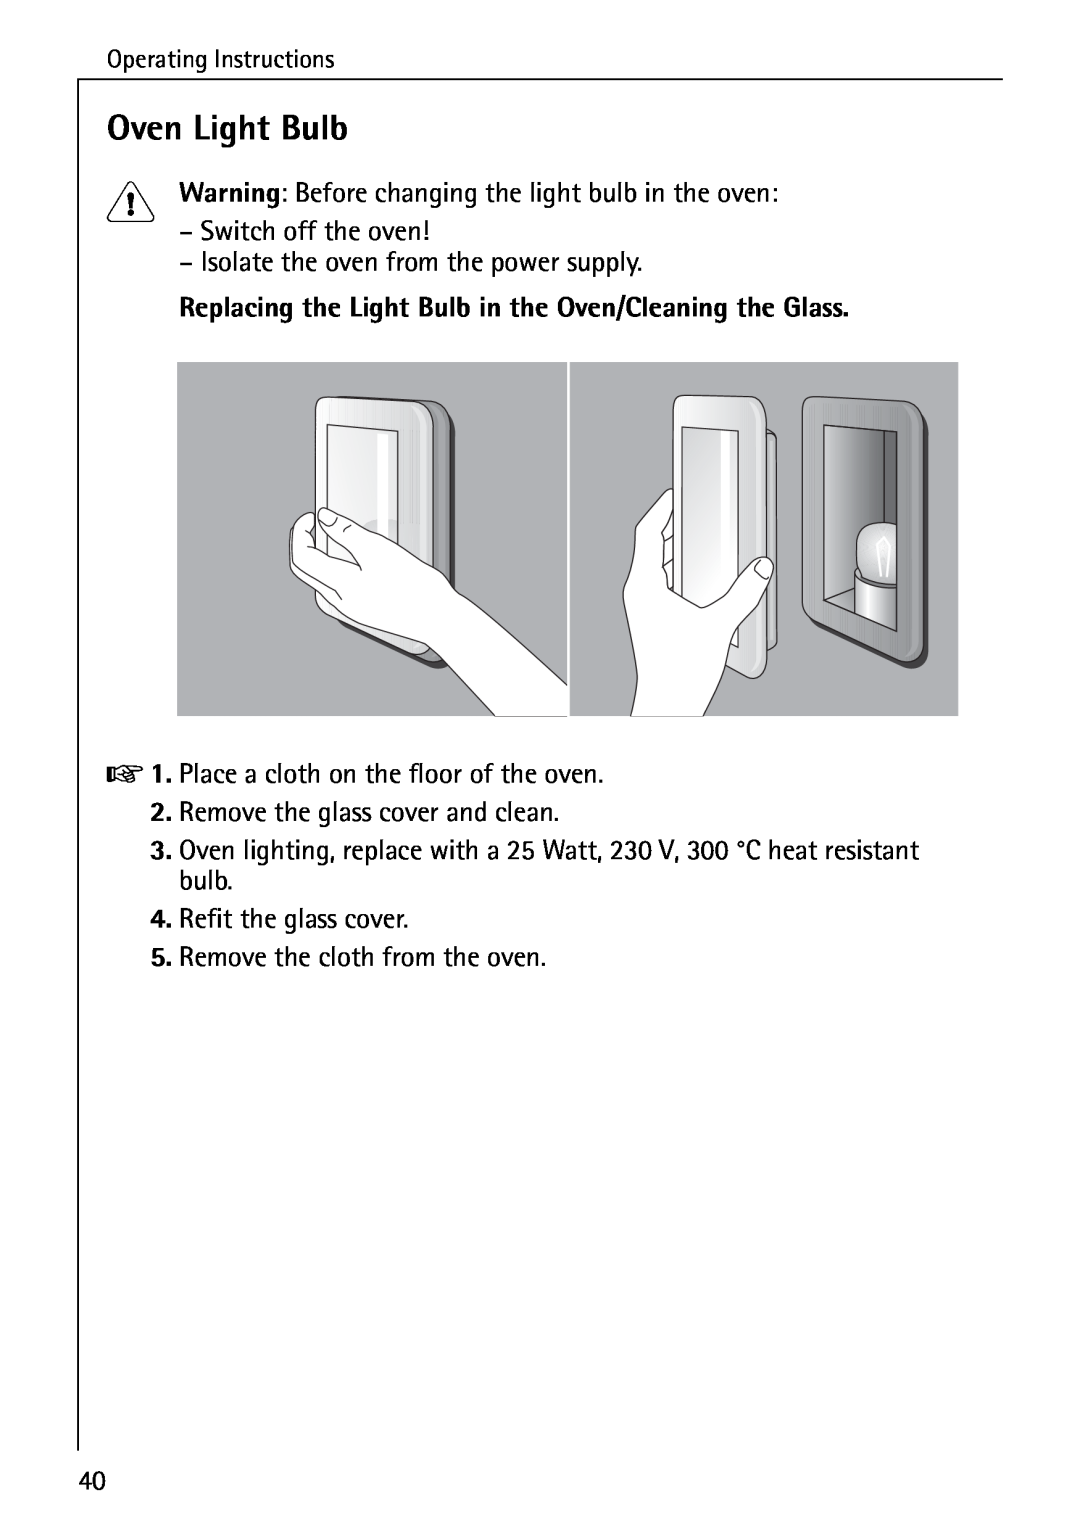 AEG B 4100 operating instructions Oven Light Bulb 